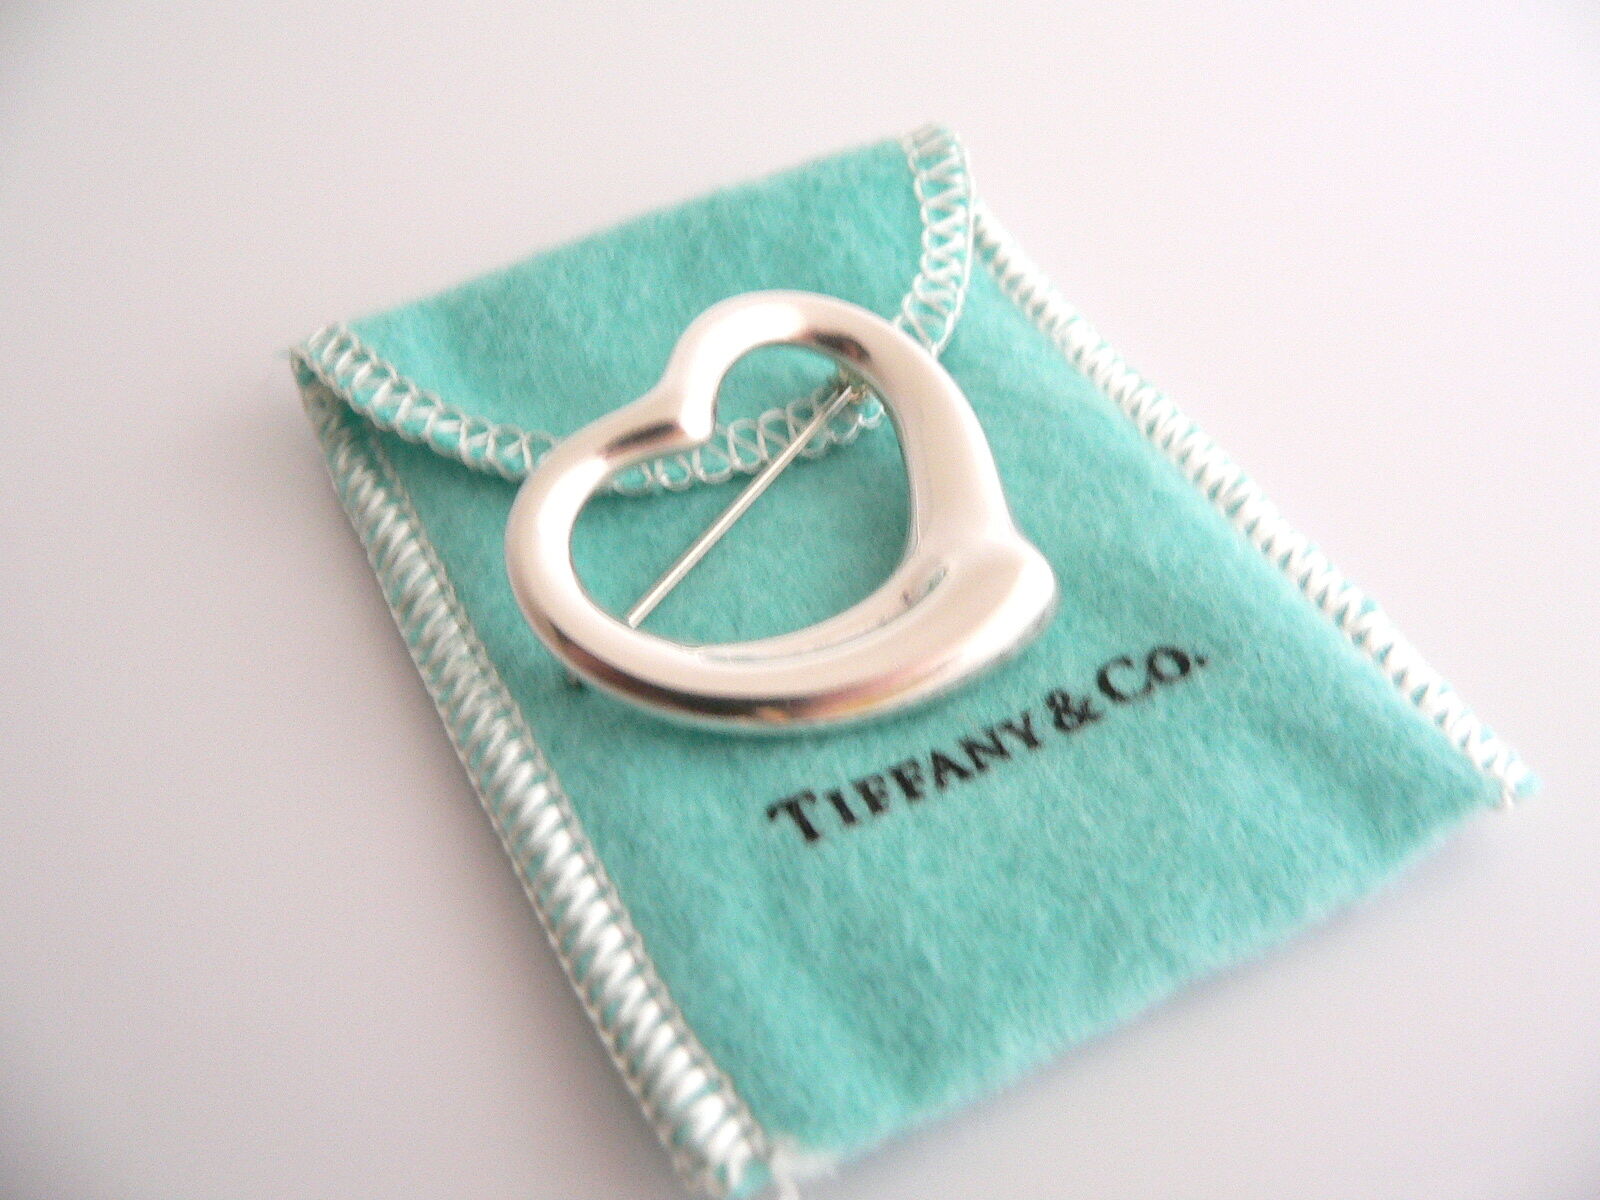 TIFFANY & CO. Large Estate 18kt Pavé Diamond Safety Pin